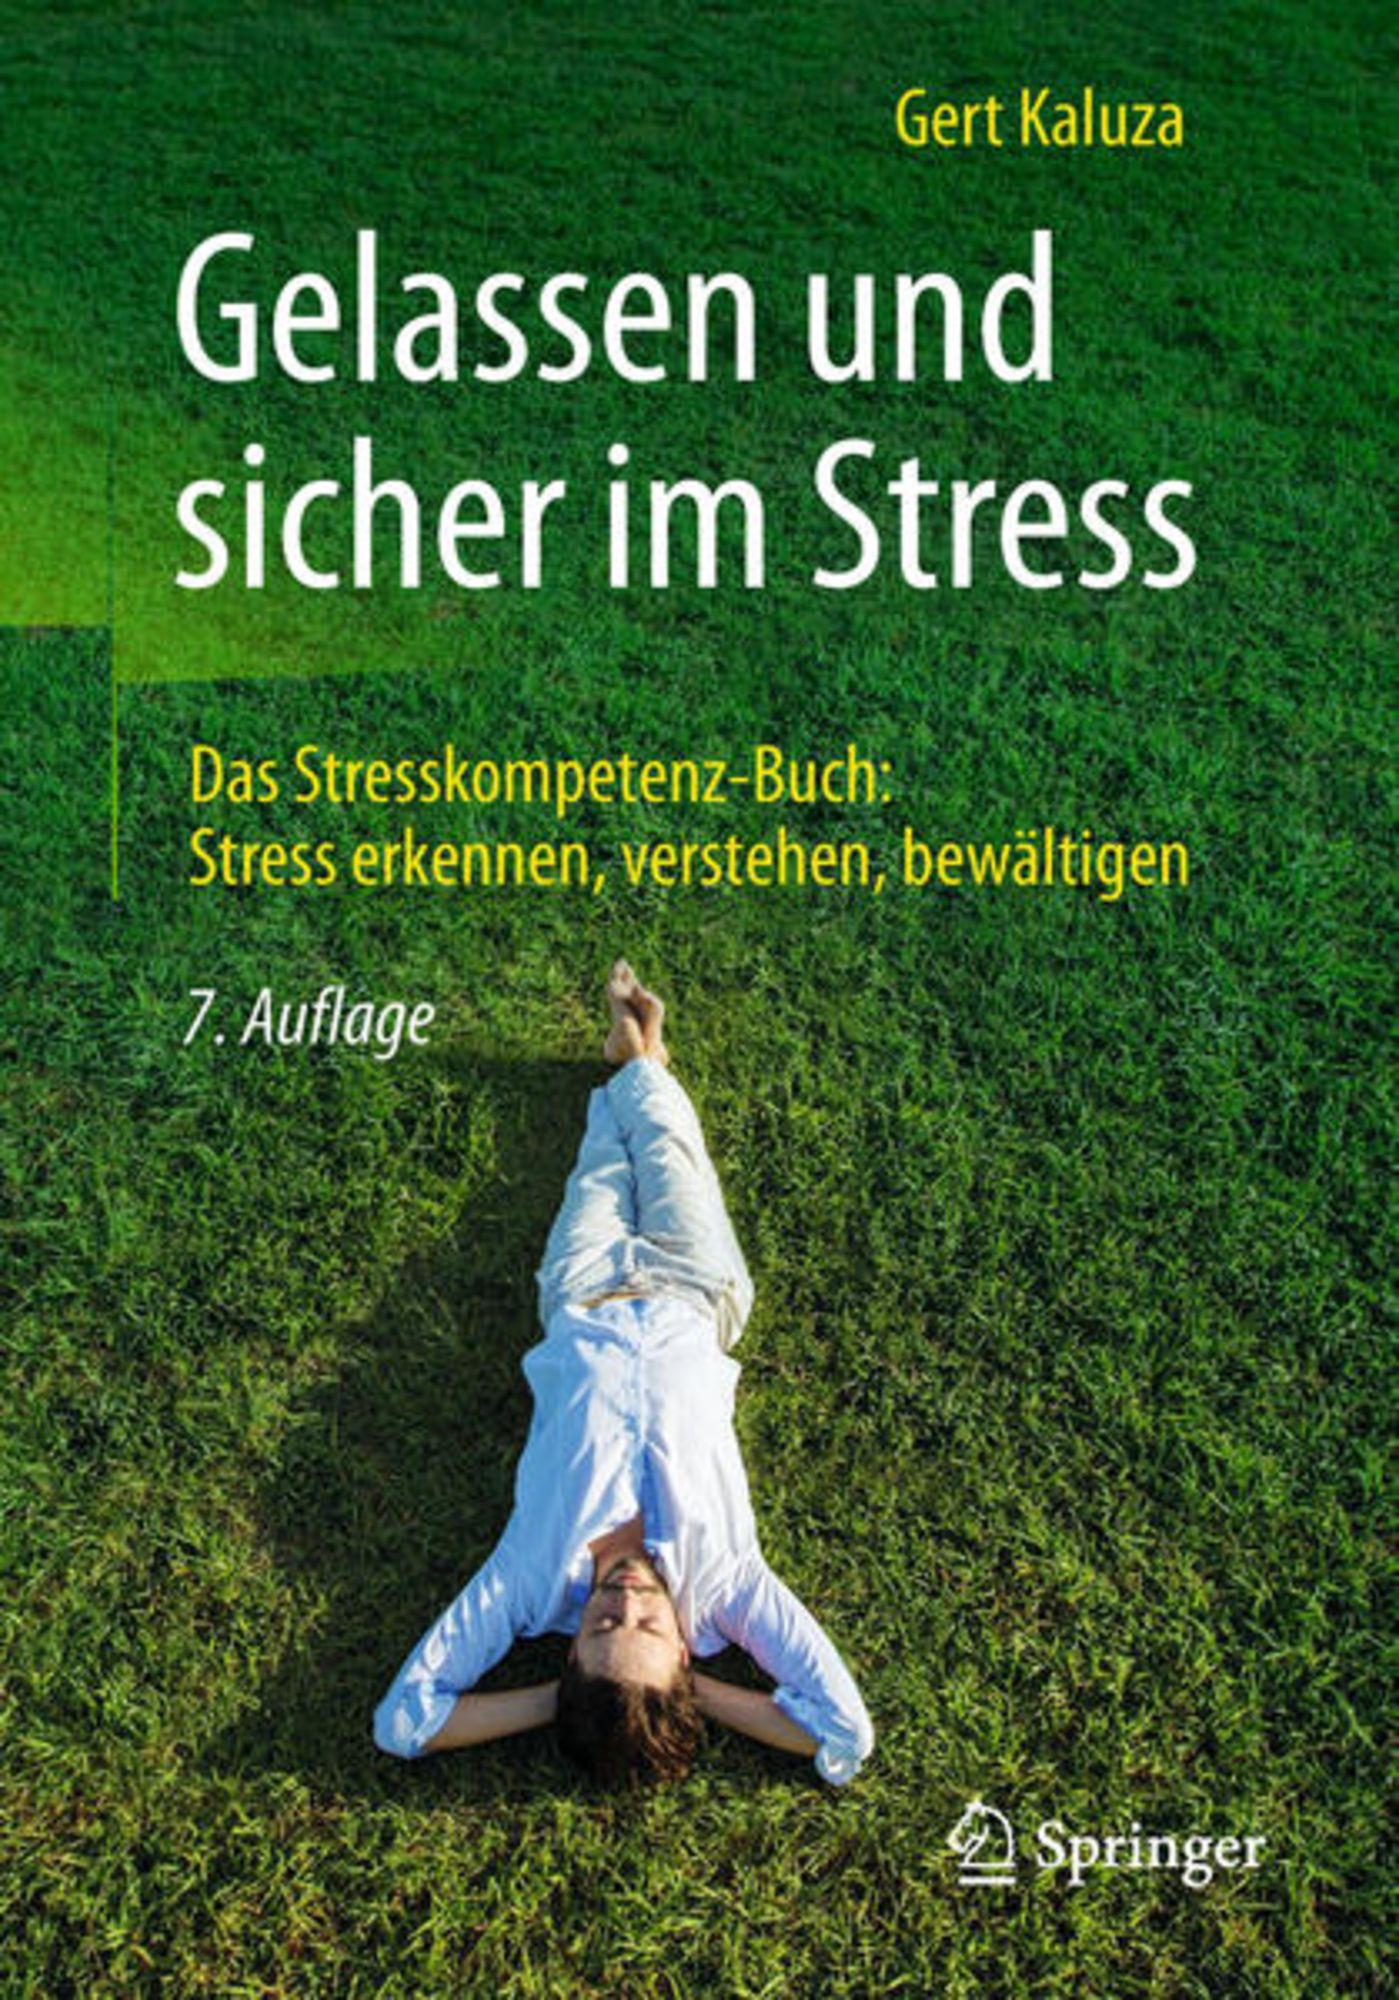 Gelassen und sicher im Stress' von 'Gert Kaluza' - Buch - '978-3